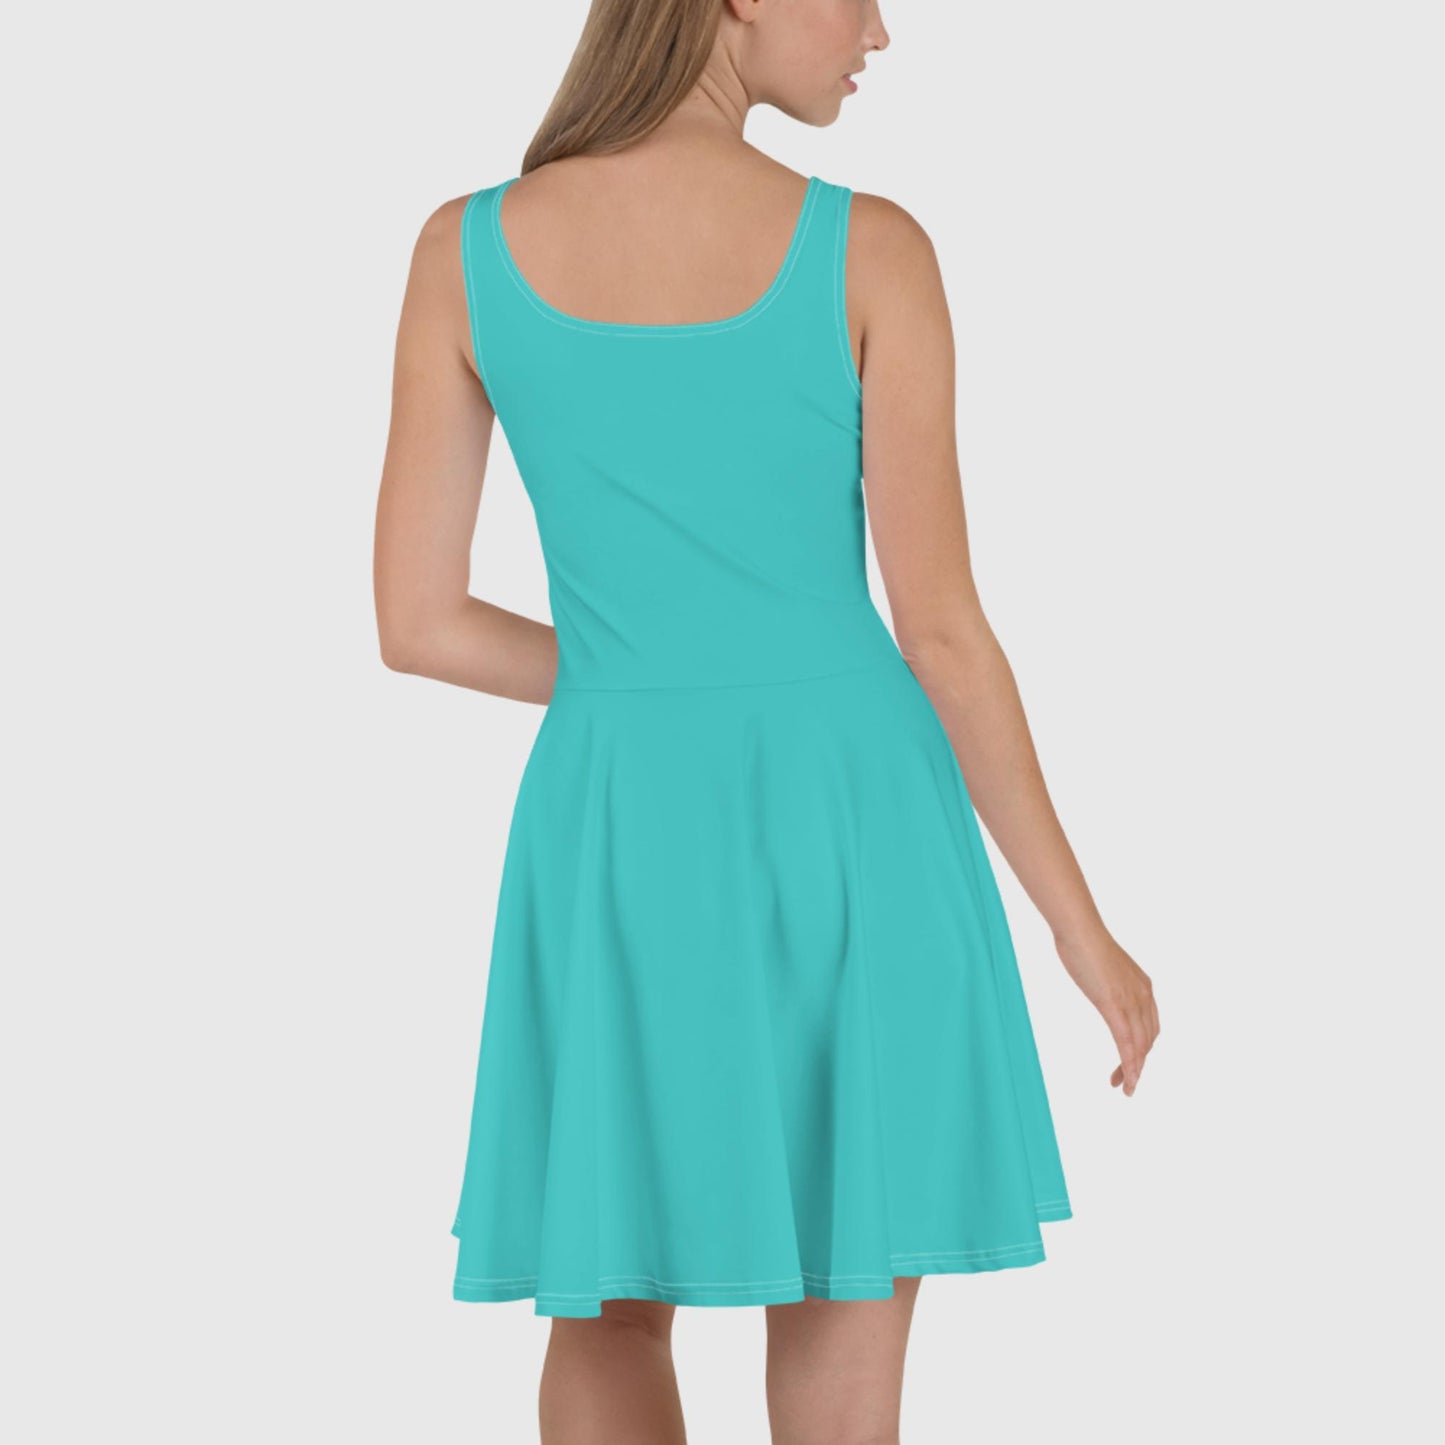 Skater Dress - Turquoise